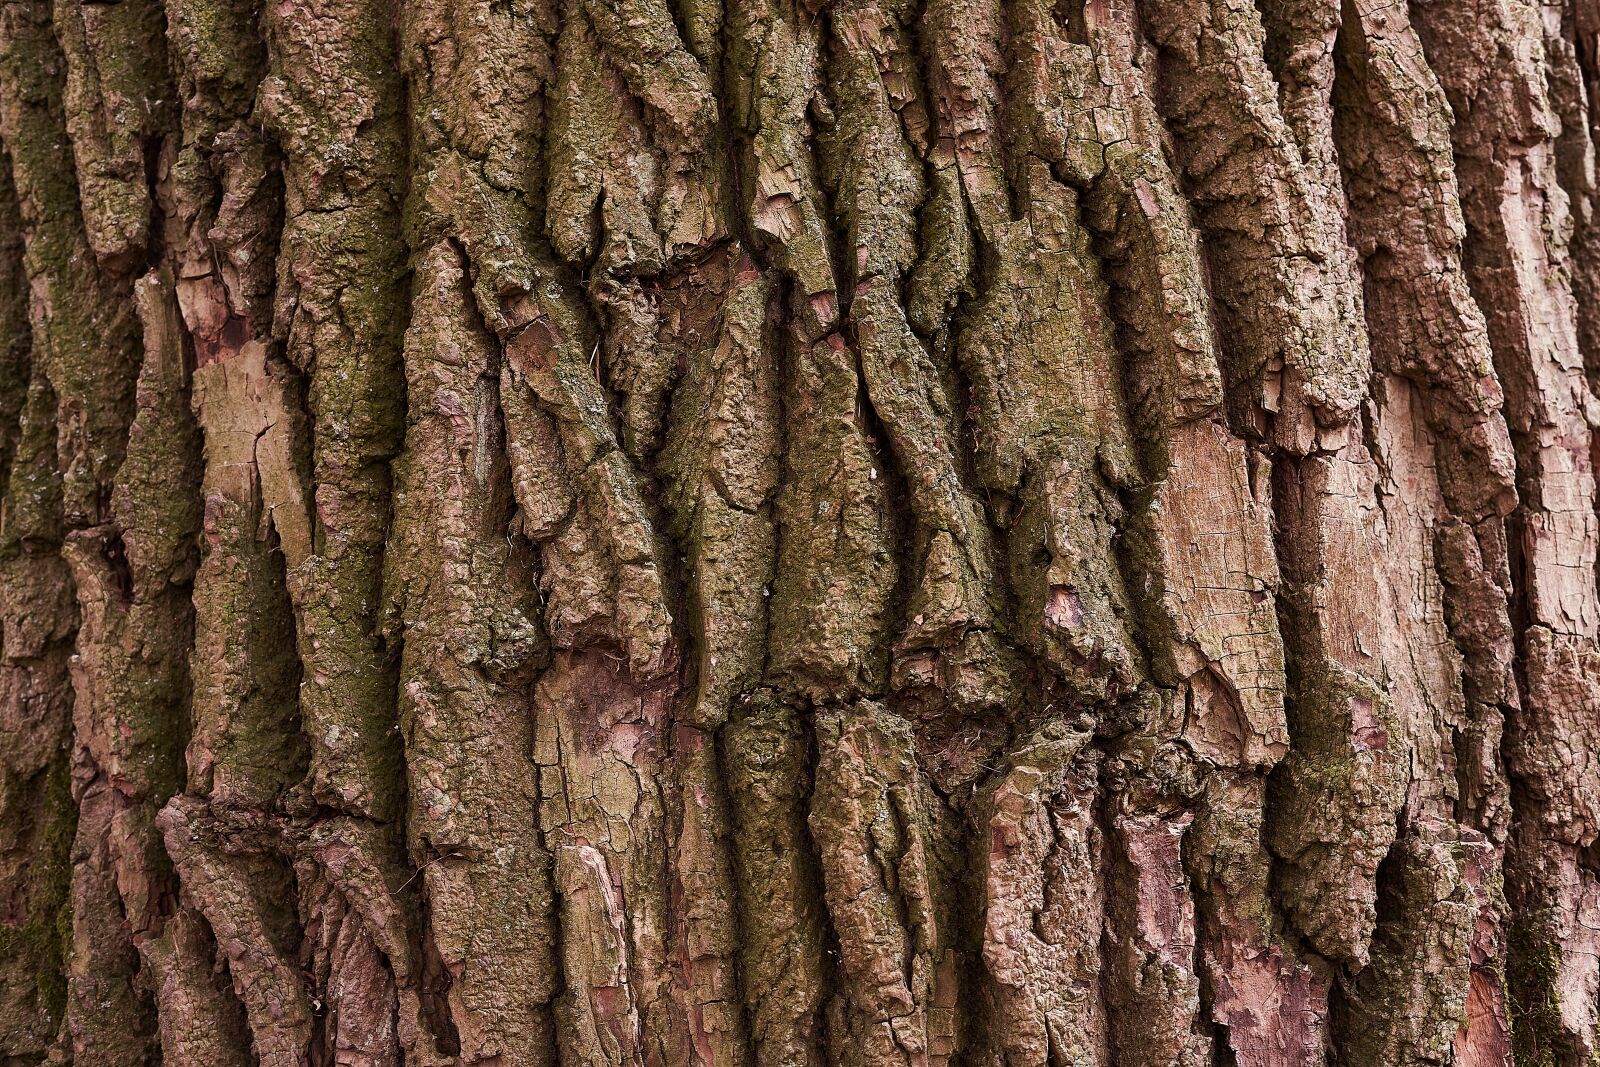 Sony a7 III + Sony FE 50mm F1.8 sample photo. Tree, bark, nature photography